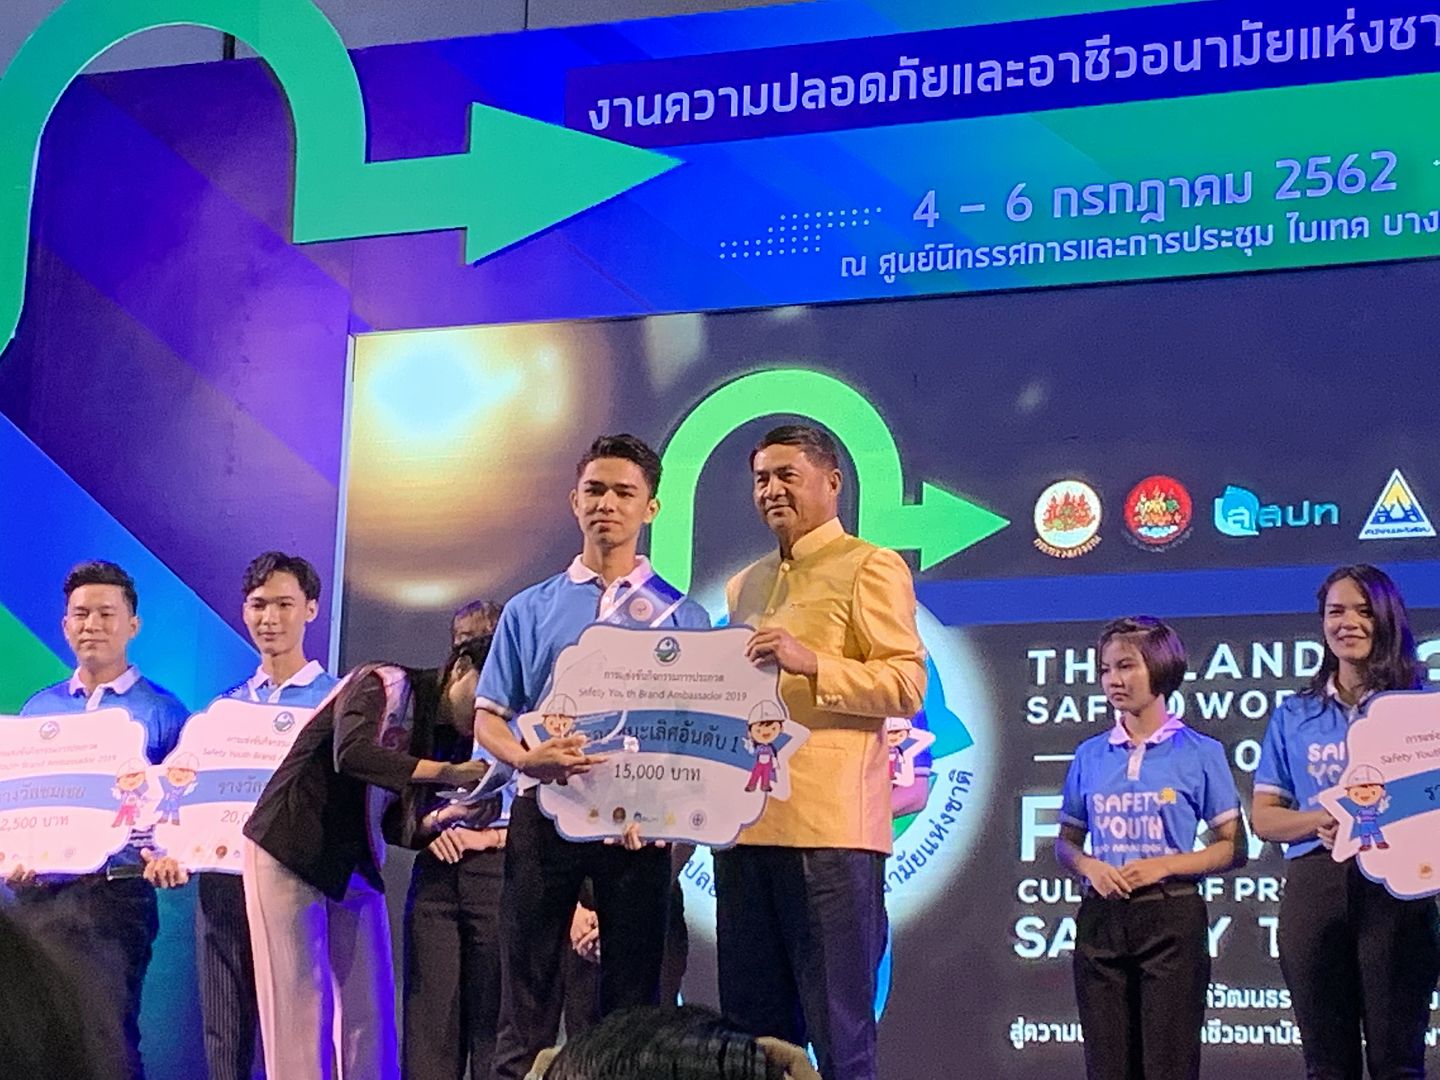 นักศึกษาอาชีวอนามัยรับรางวัลรองชนะเลิศการประกวด Safety Ambassador Youth 2019